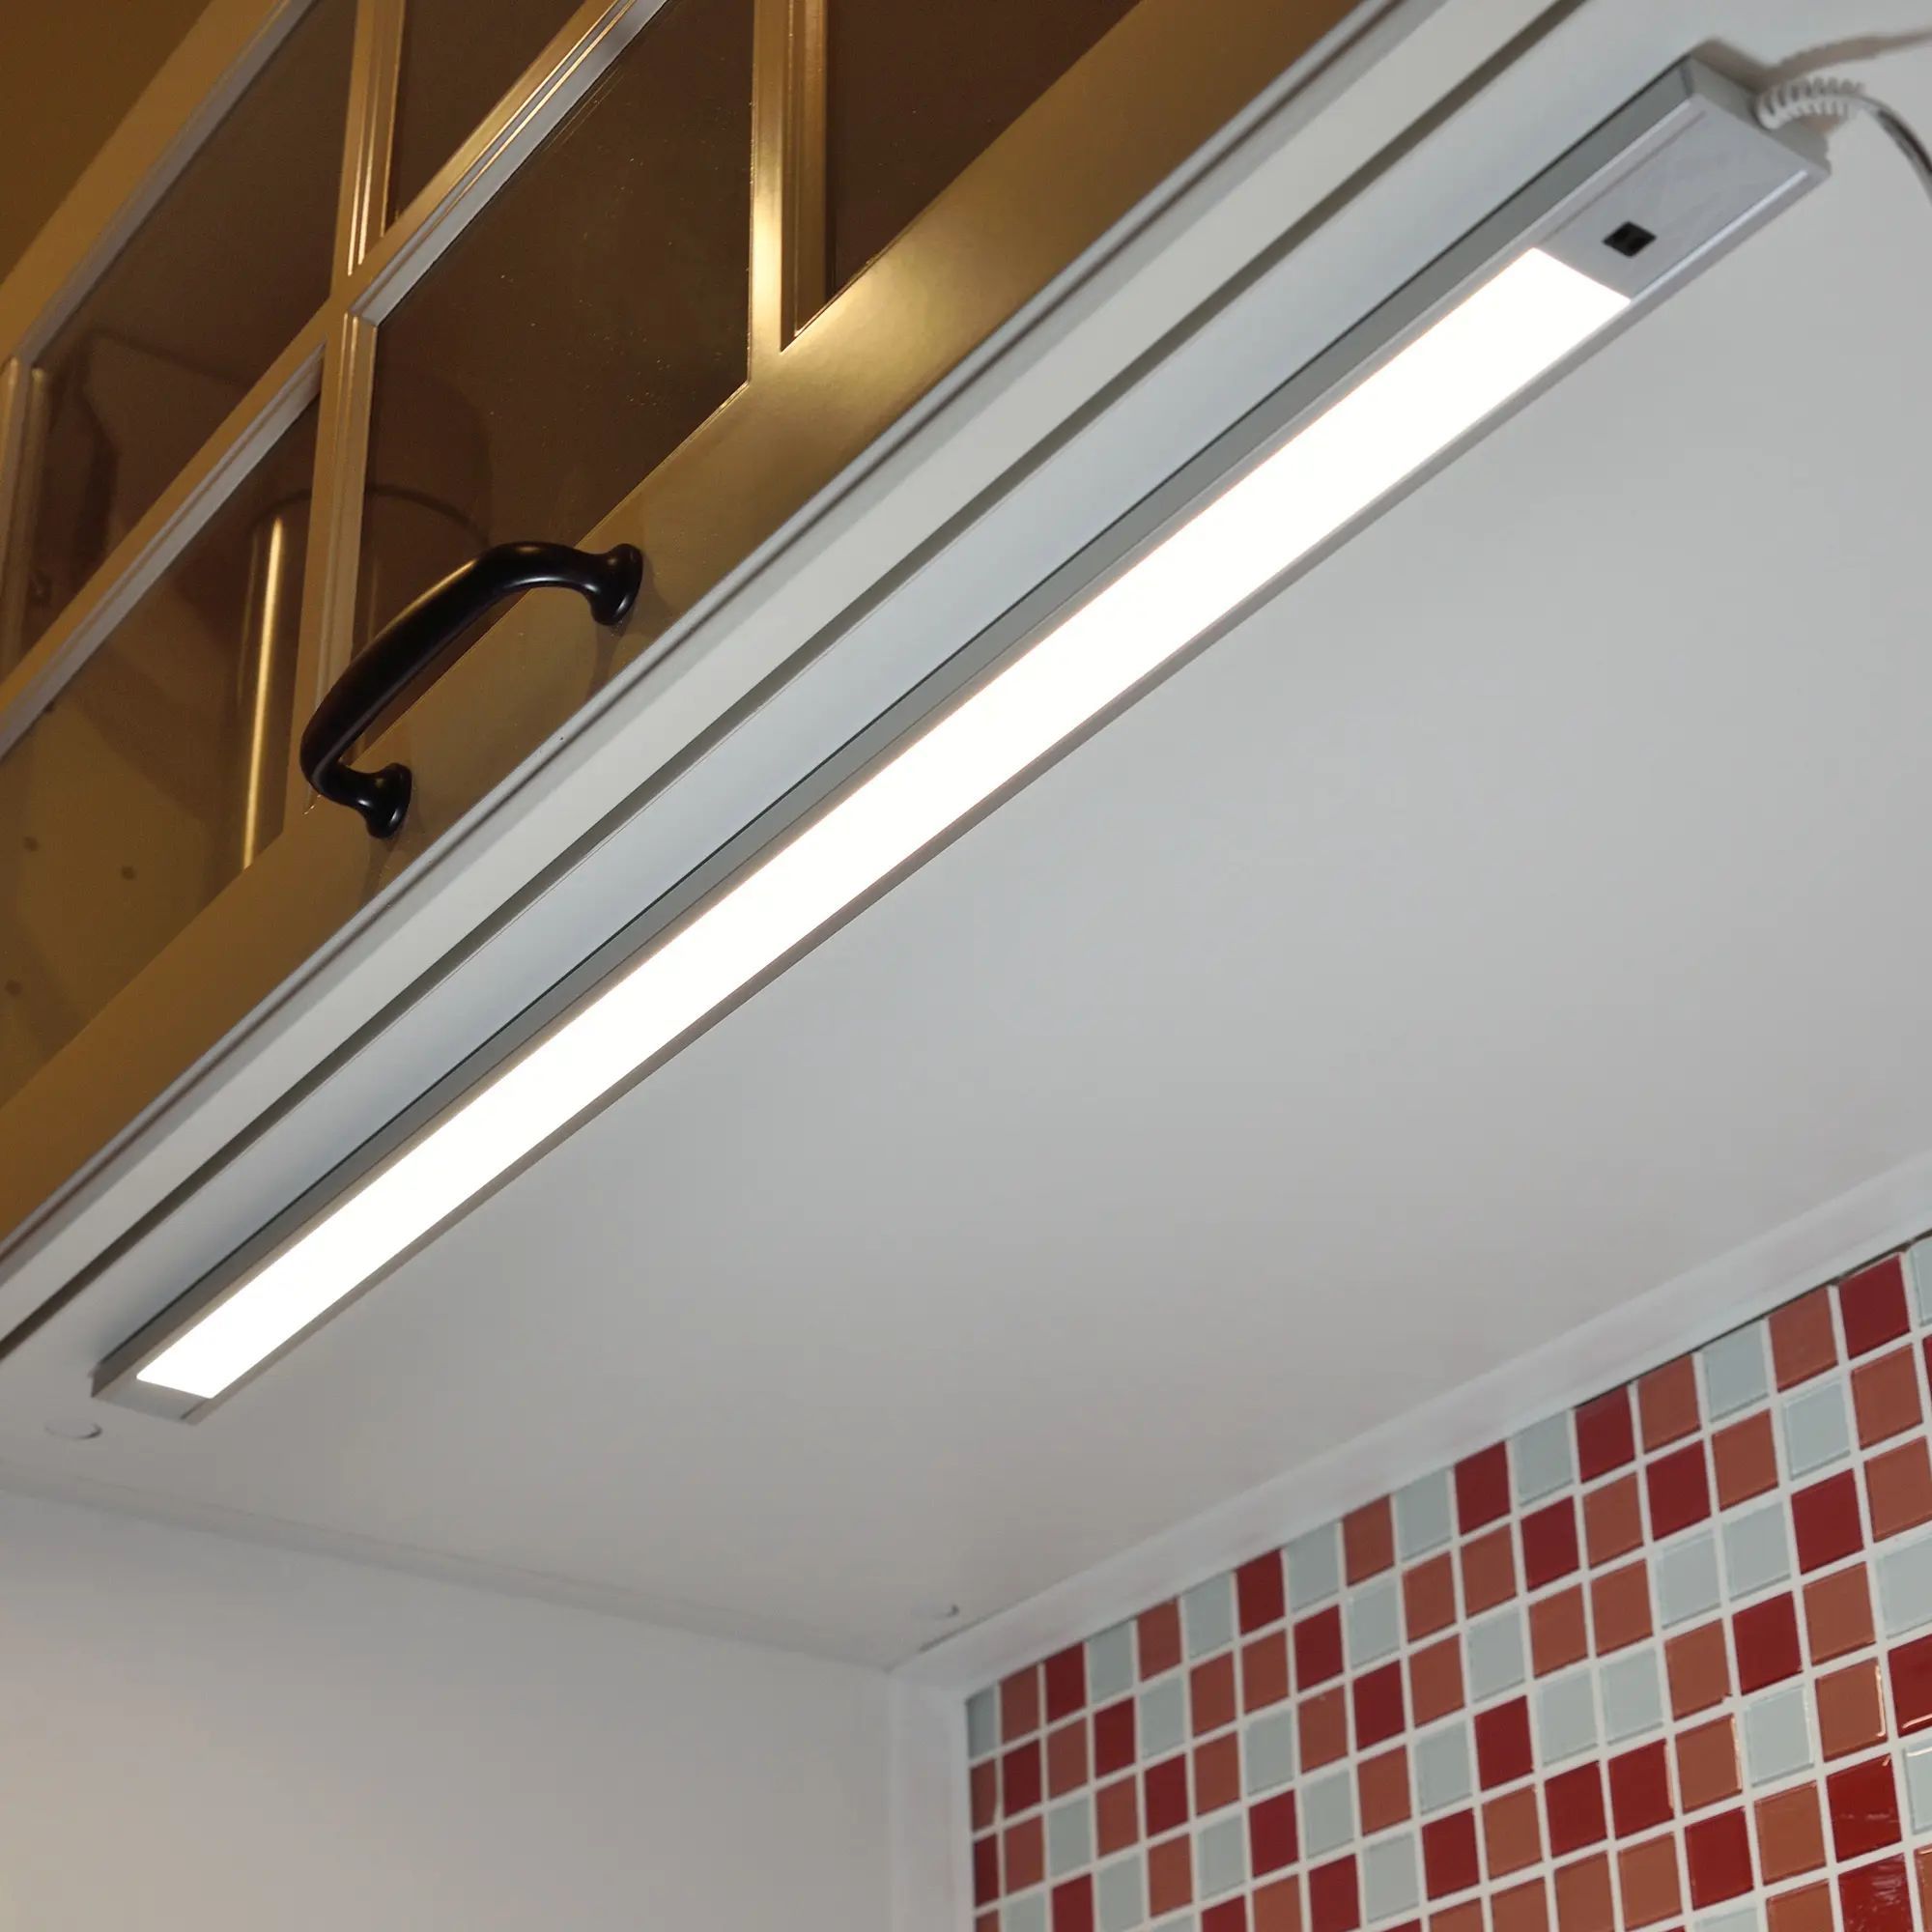 подсветка для кухни под шкафы с выключателем